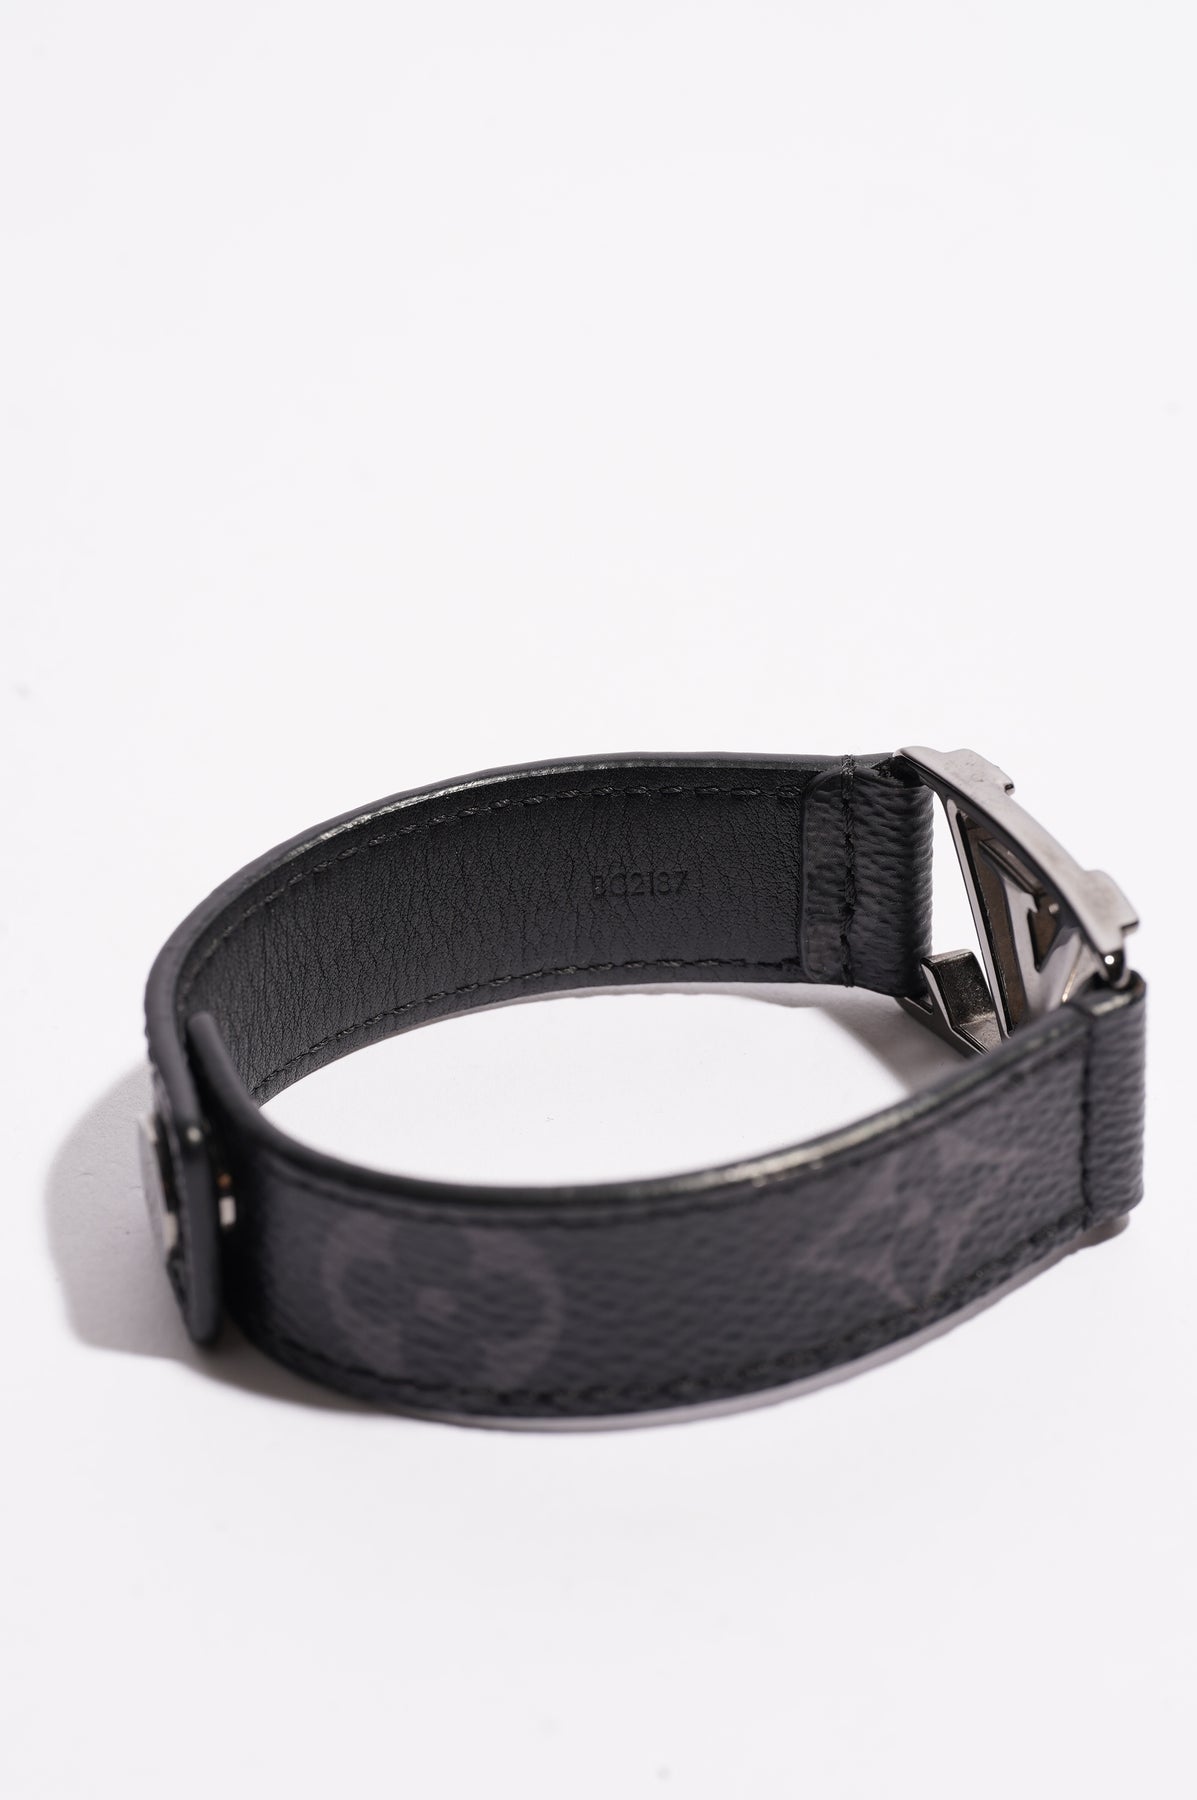 Authentic Louis Vuitton Monogram Eclipse Hockenheim Bracelet Size 21